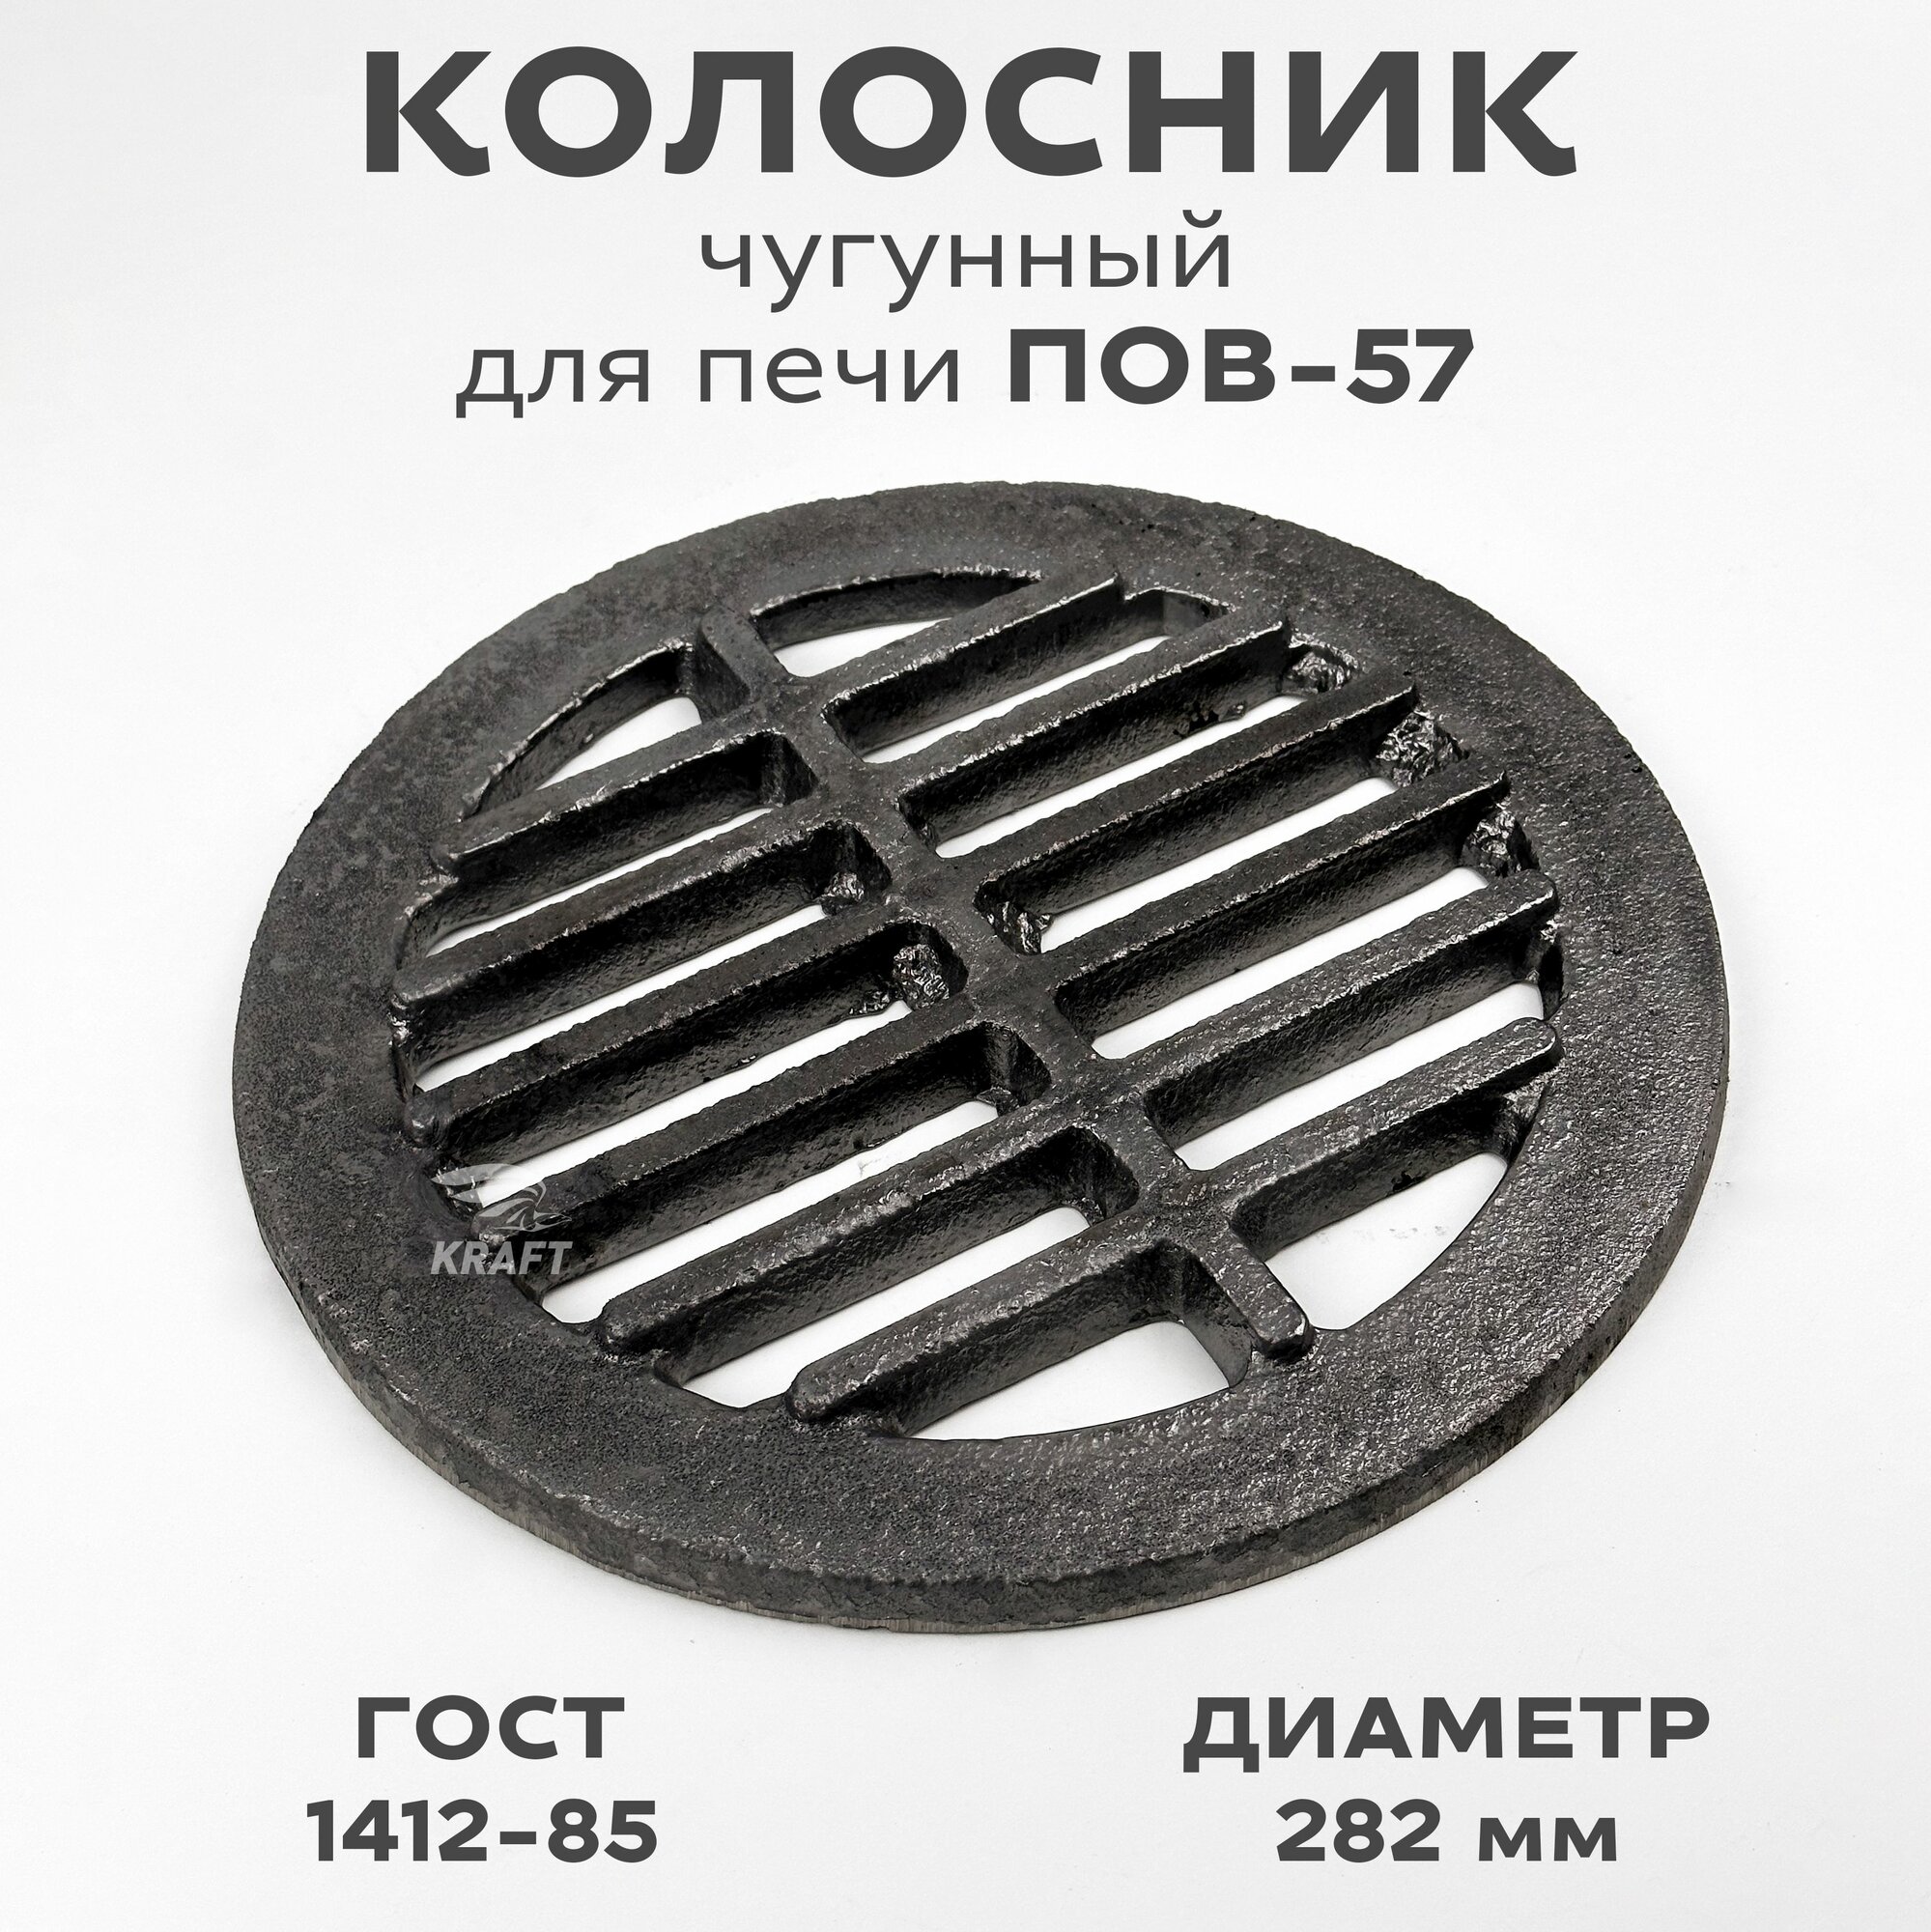 Решетка чугунная колосниковая (колосник) для печей каминов диаметр 282 мм ГОСТ 1412-85 ПОВ-57